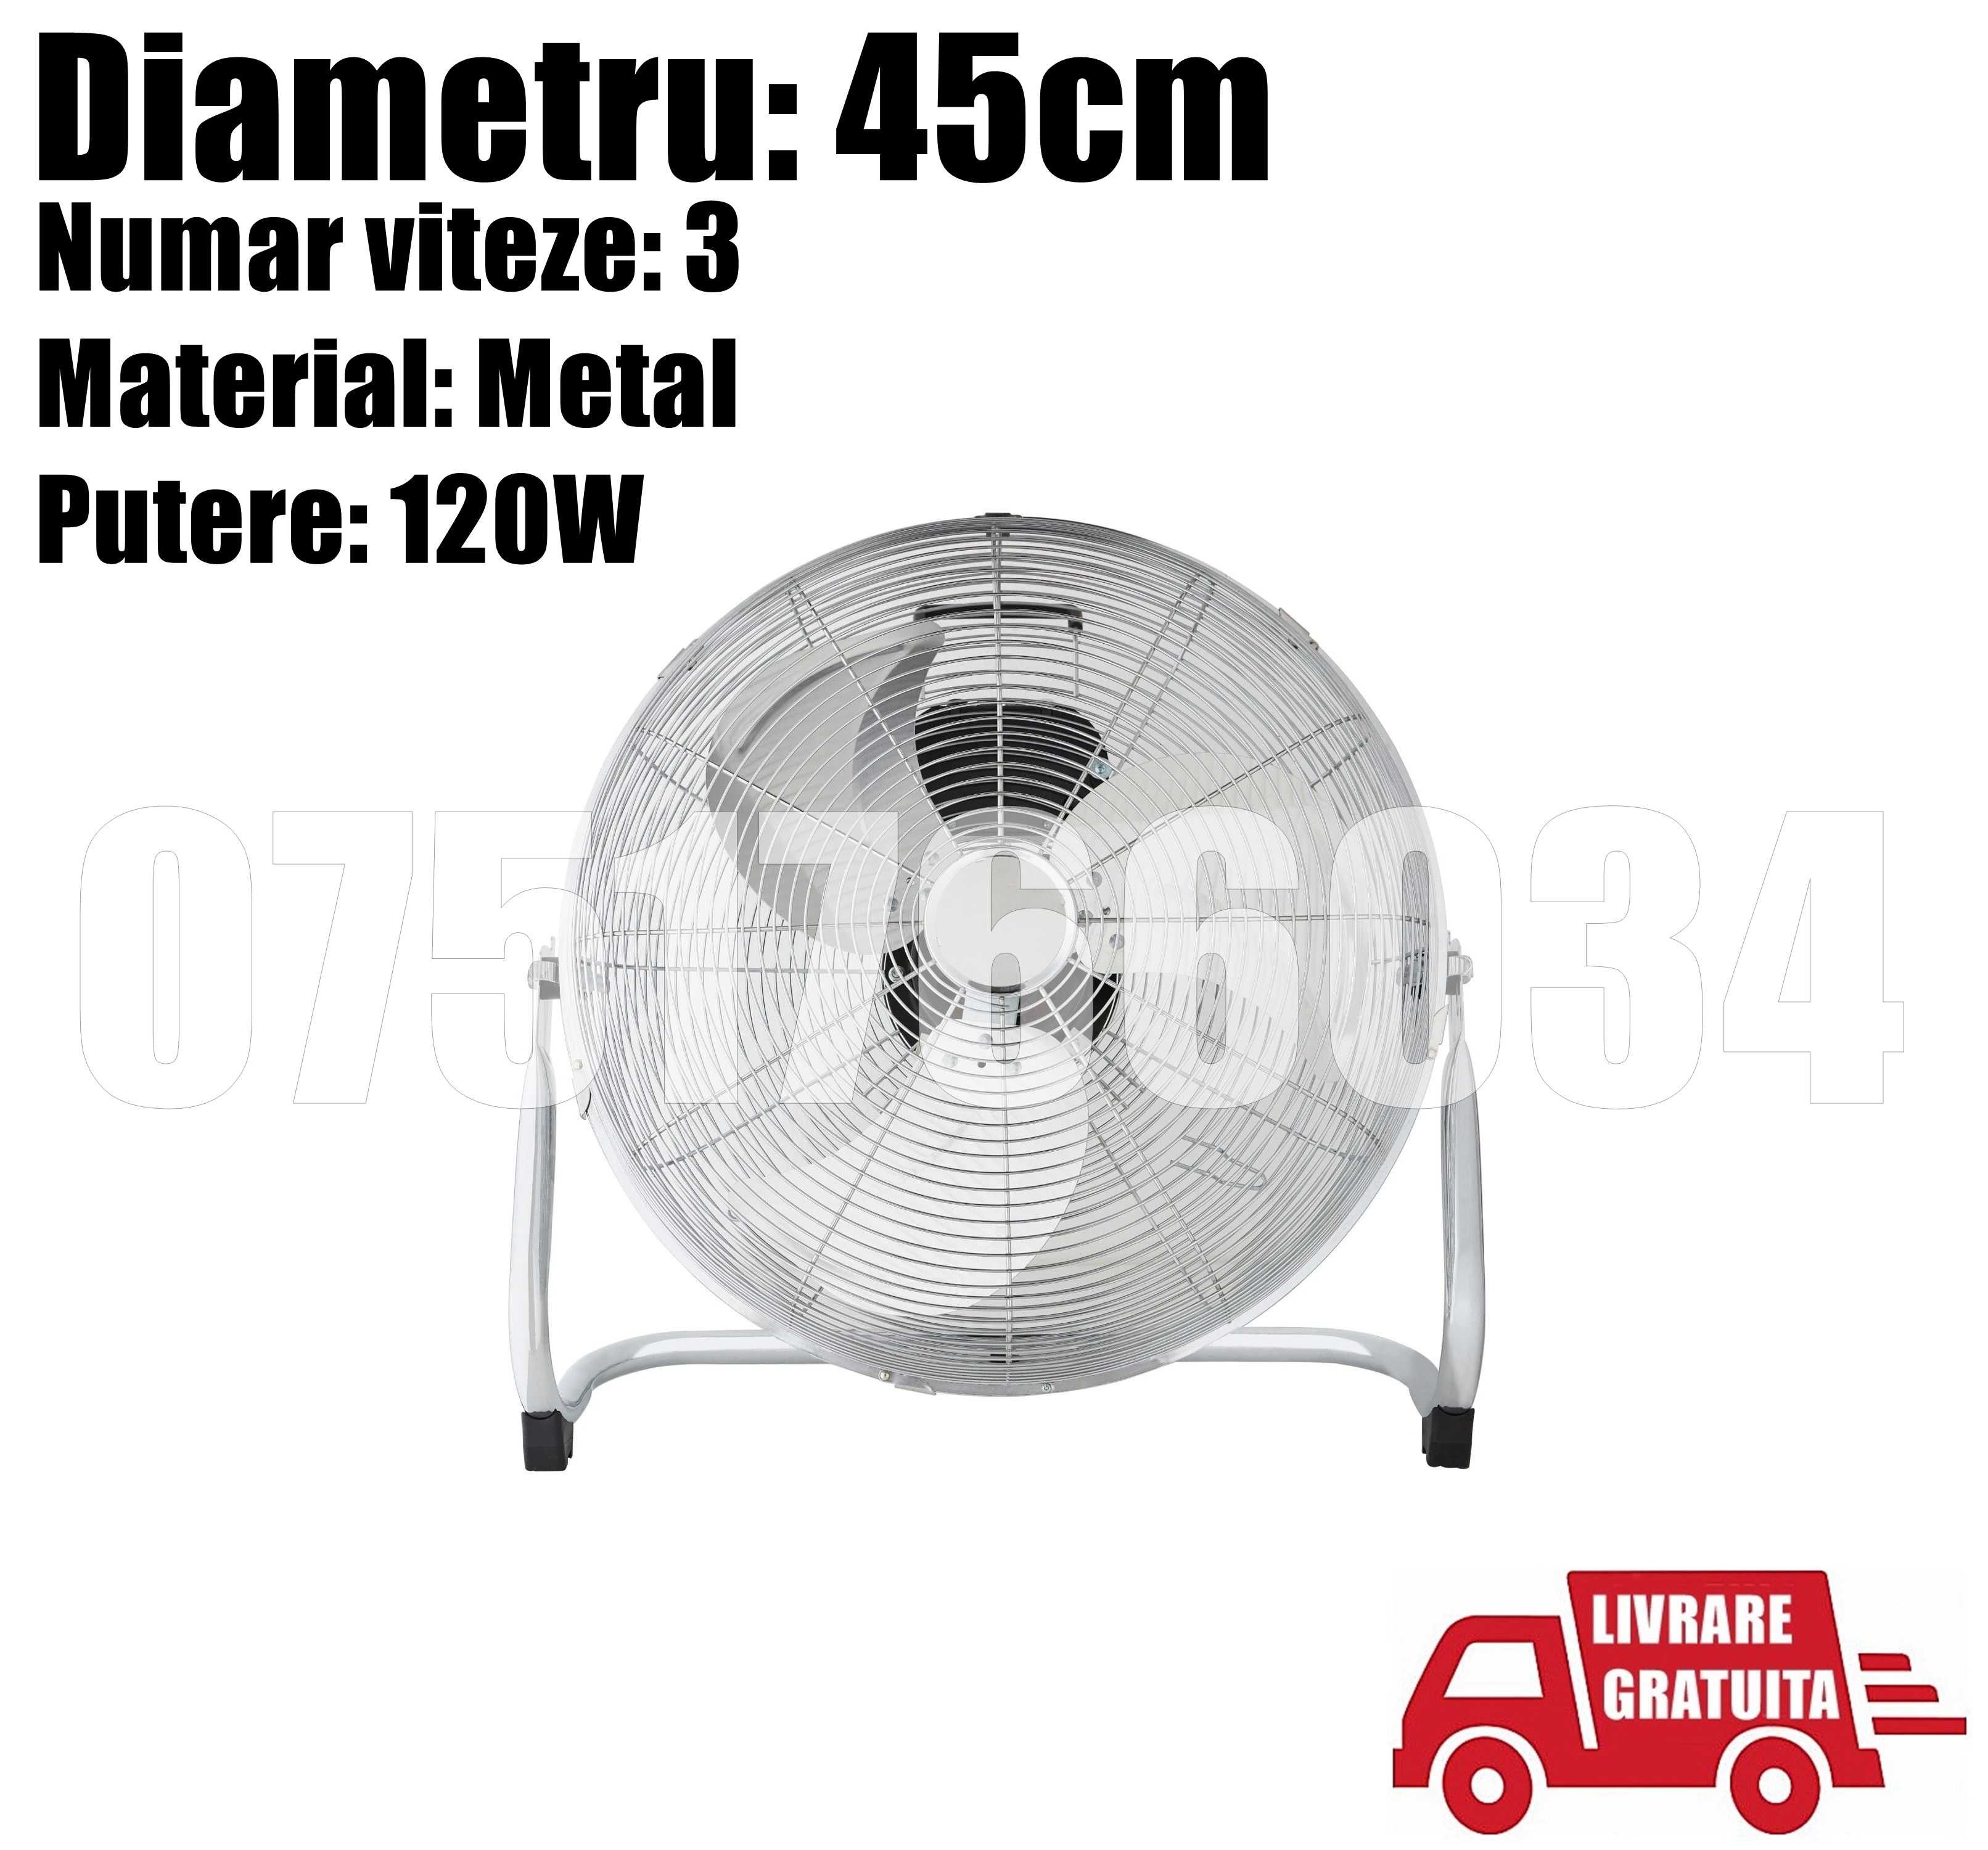 Ventilator Mare Industrial 45cm 3 Viteze Aluminiu LIVRARE GRATUITA !